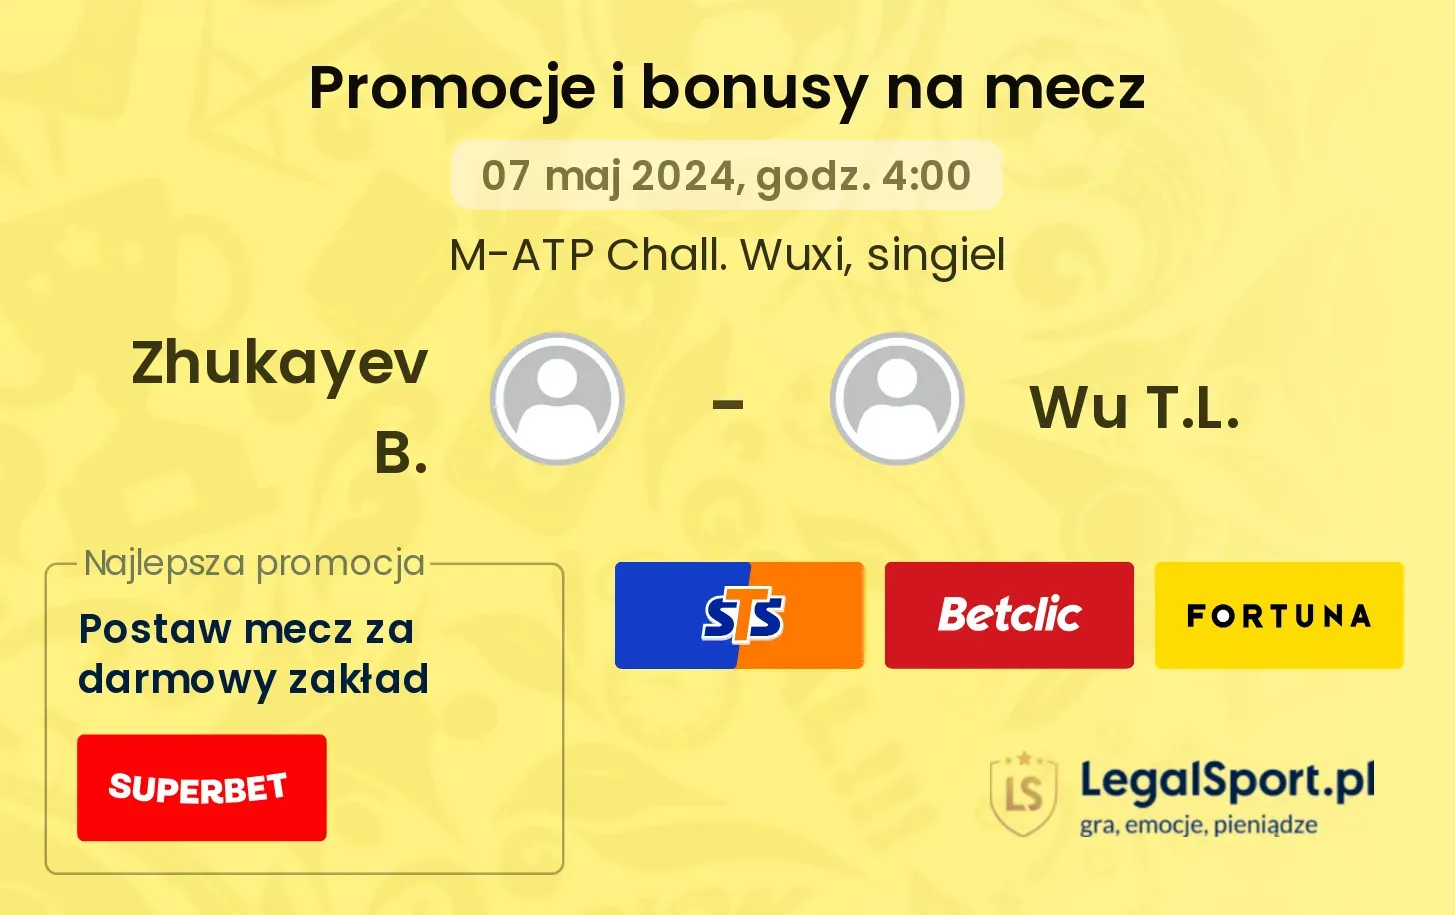 Zhukayev B. - Wu T.L. promocje bonusy na mecz